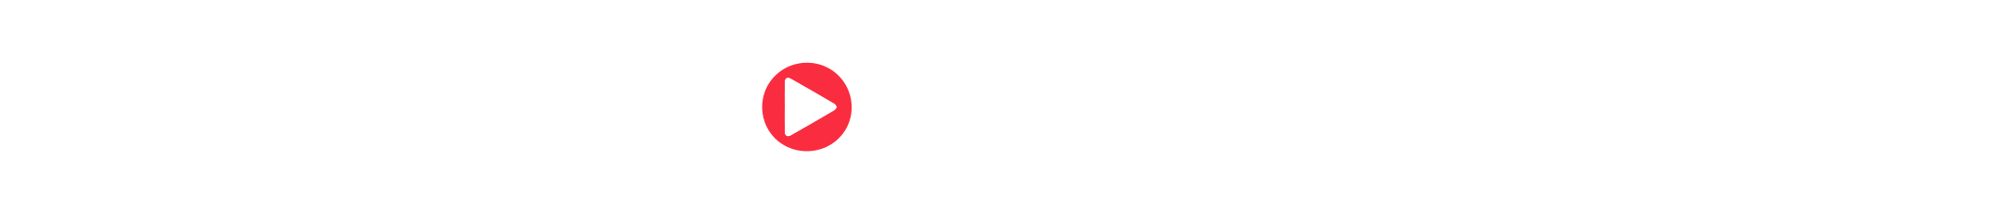 member of EdTech France